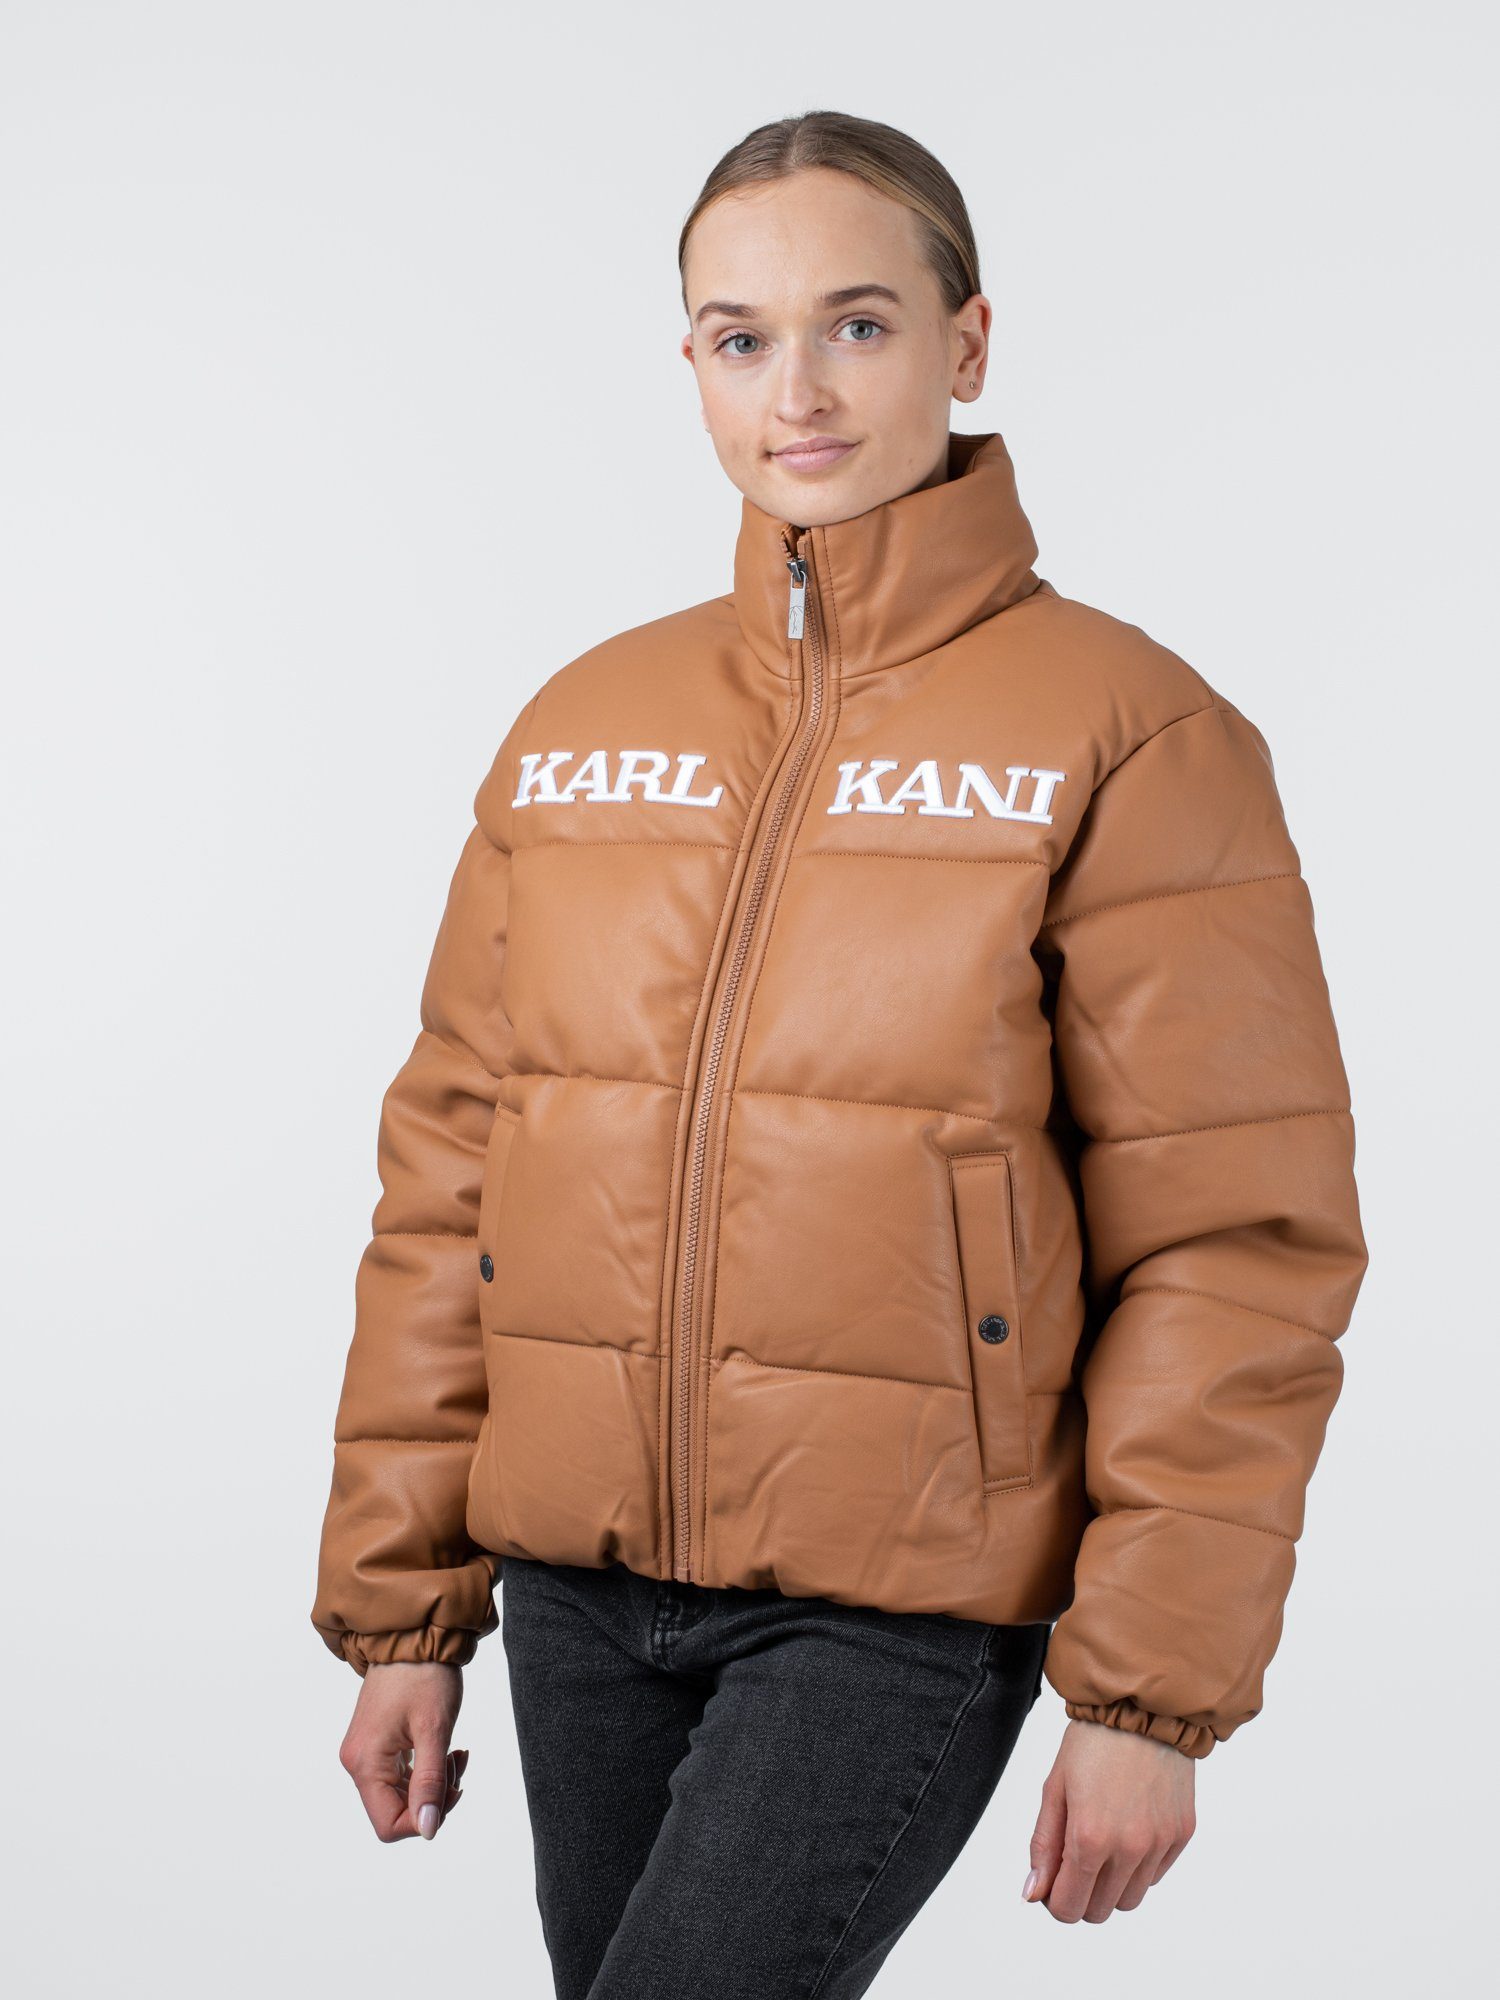 Kani Winterjacke Puffer Kani Jacket Karl Retro Karl